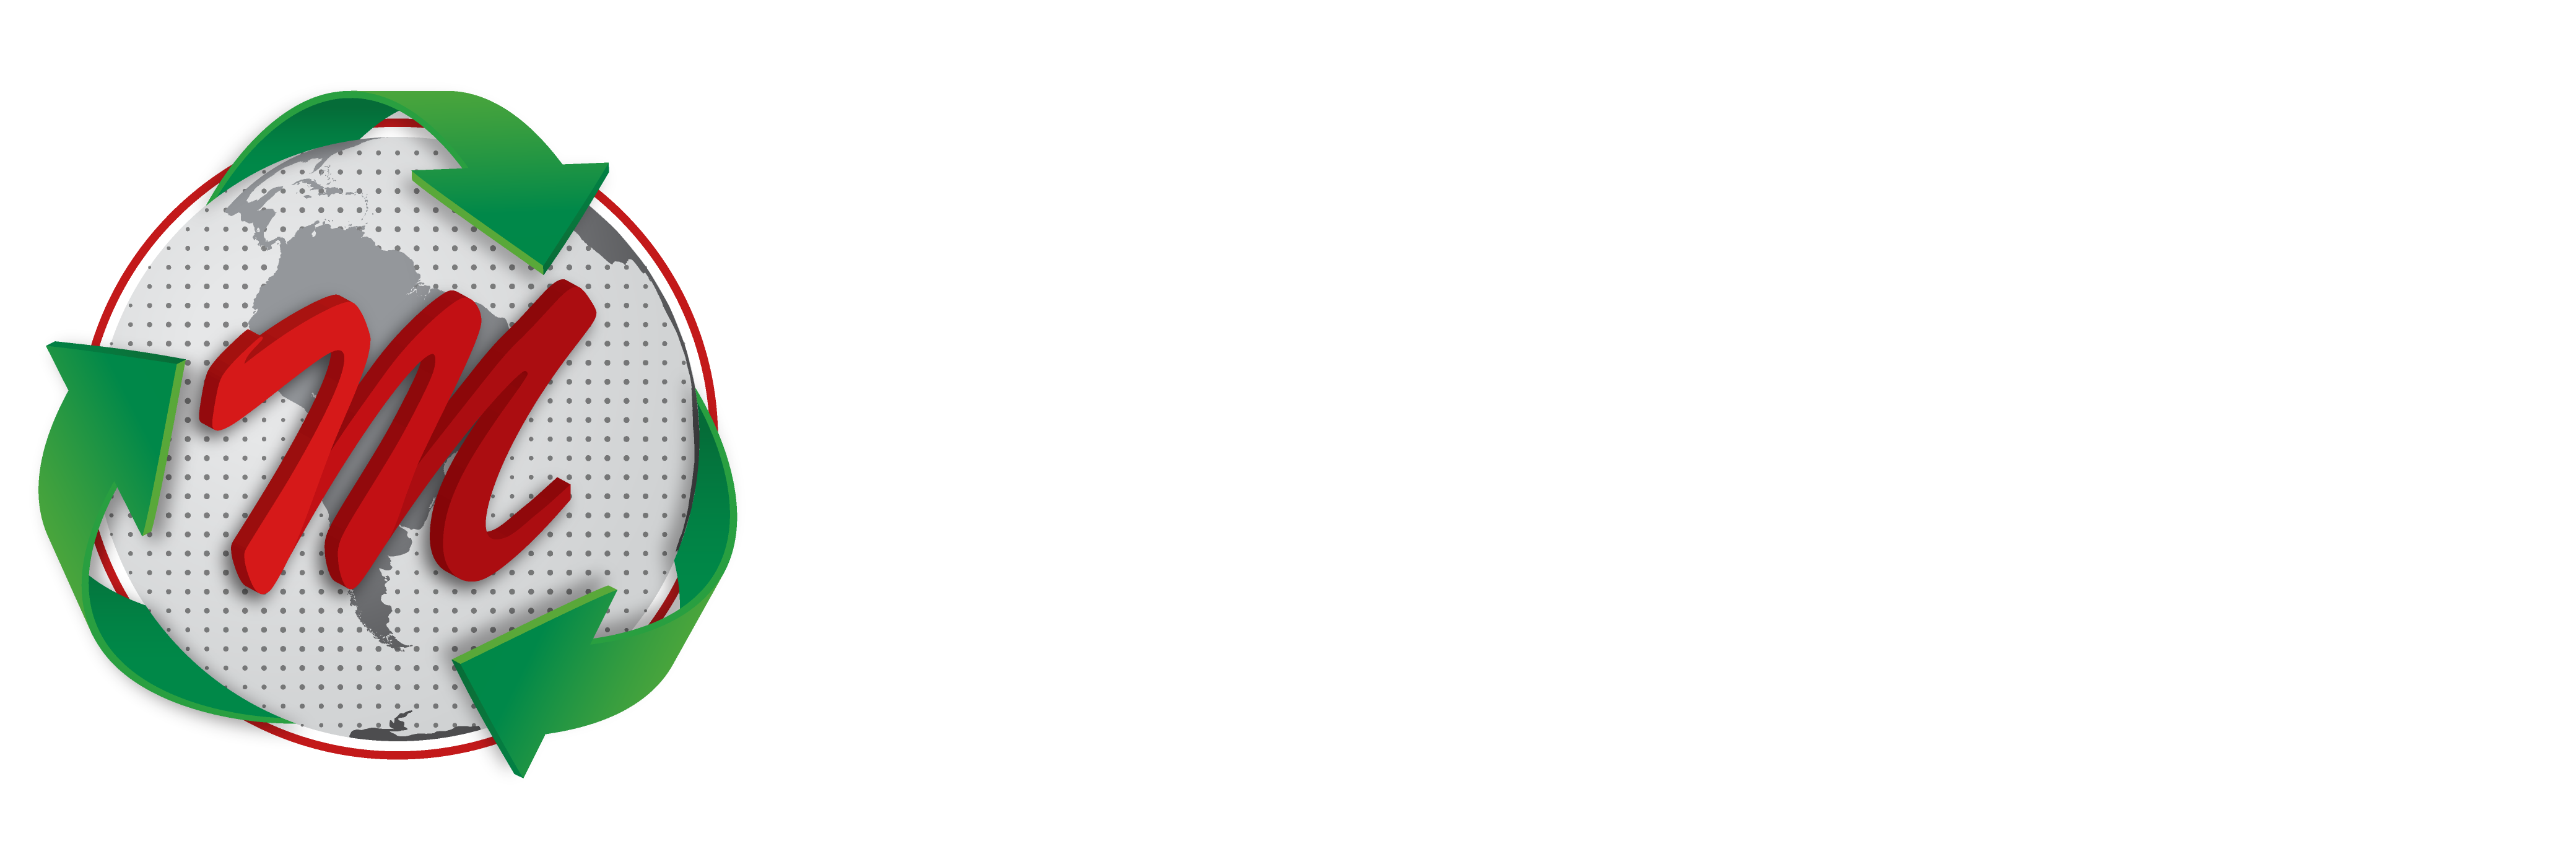 Metalnor